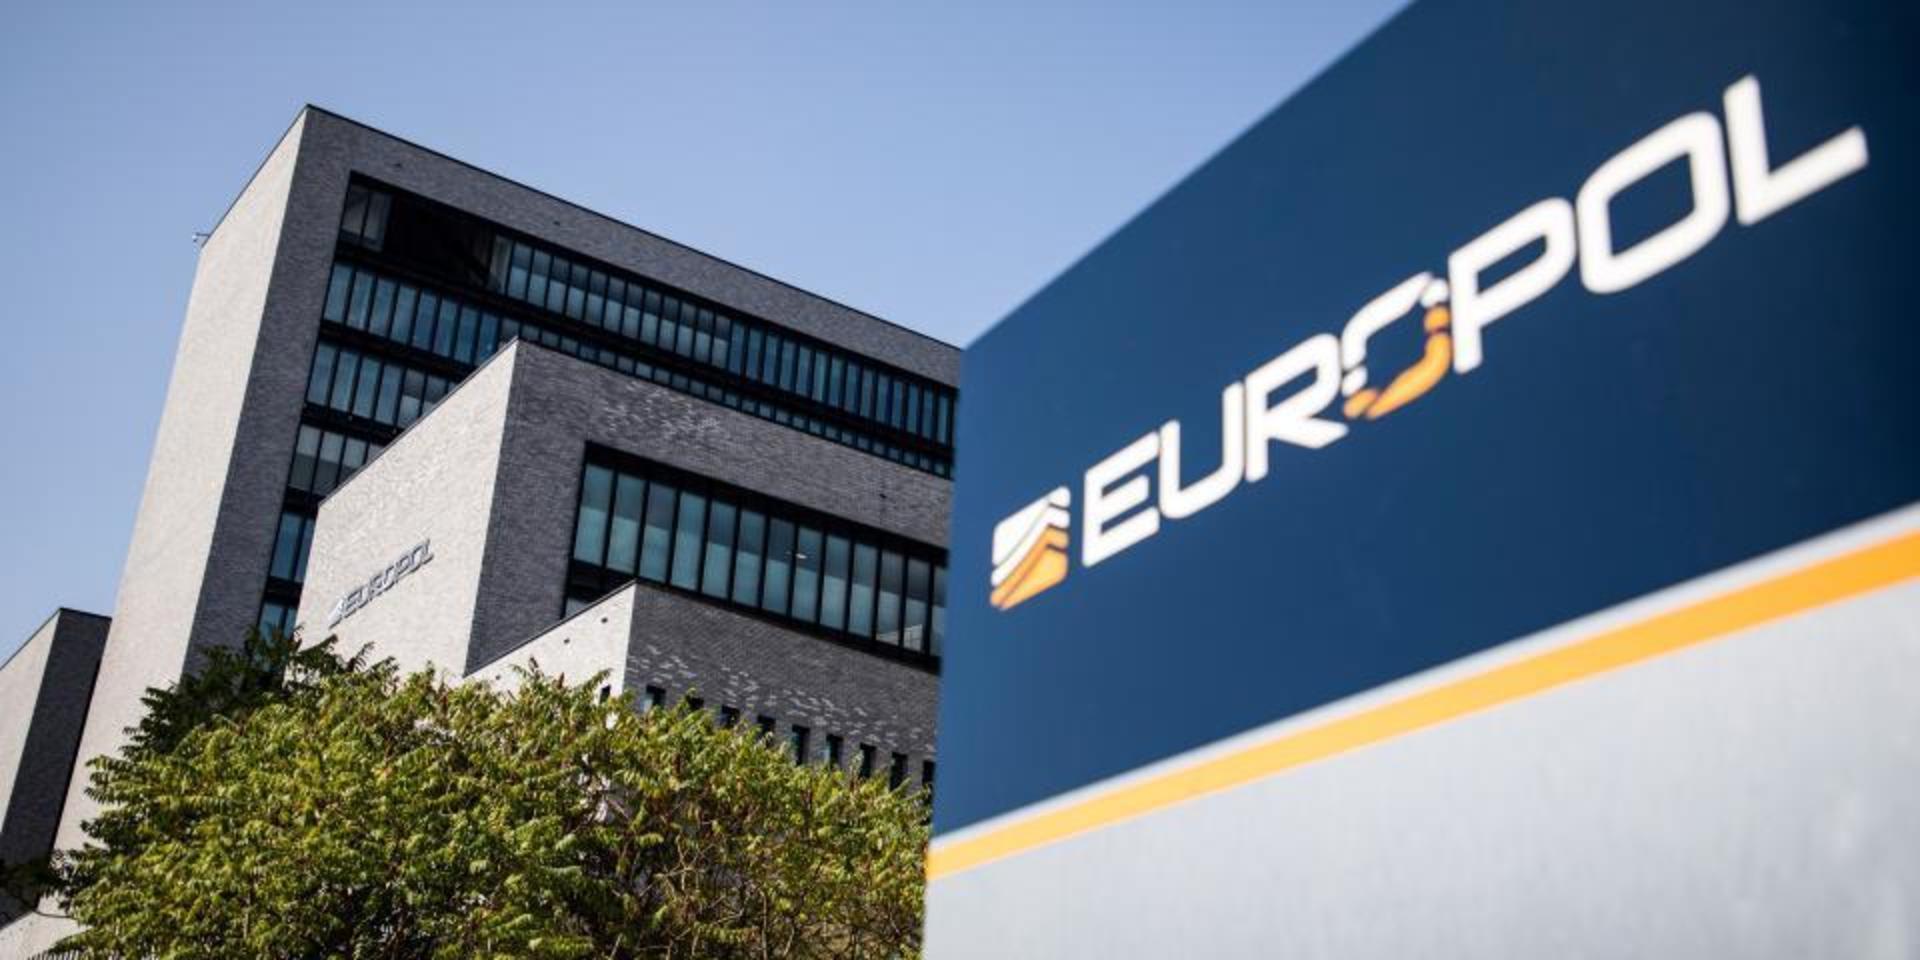 Aktionen Emma5, mot internationell penningtvätt, har bland annat samordnats av Europol, med huvudkontor i Haag.